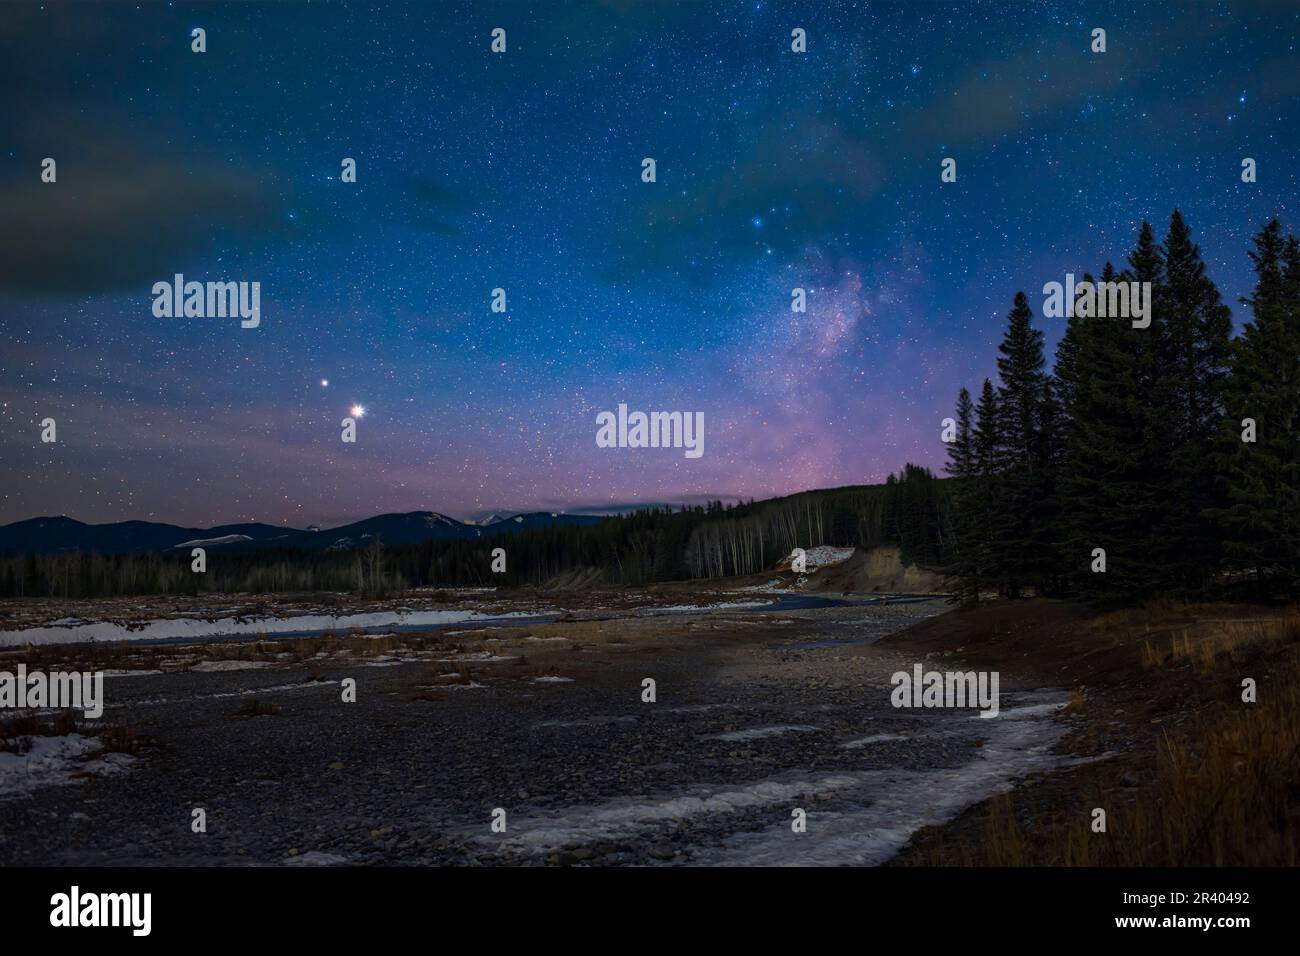 Giove, Saturno e la Via Lattea al crepuscolo sul fiume Elbow, Alberta, Canada. Foto Stock